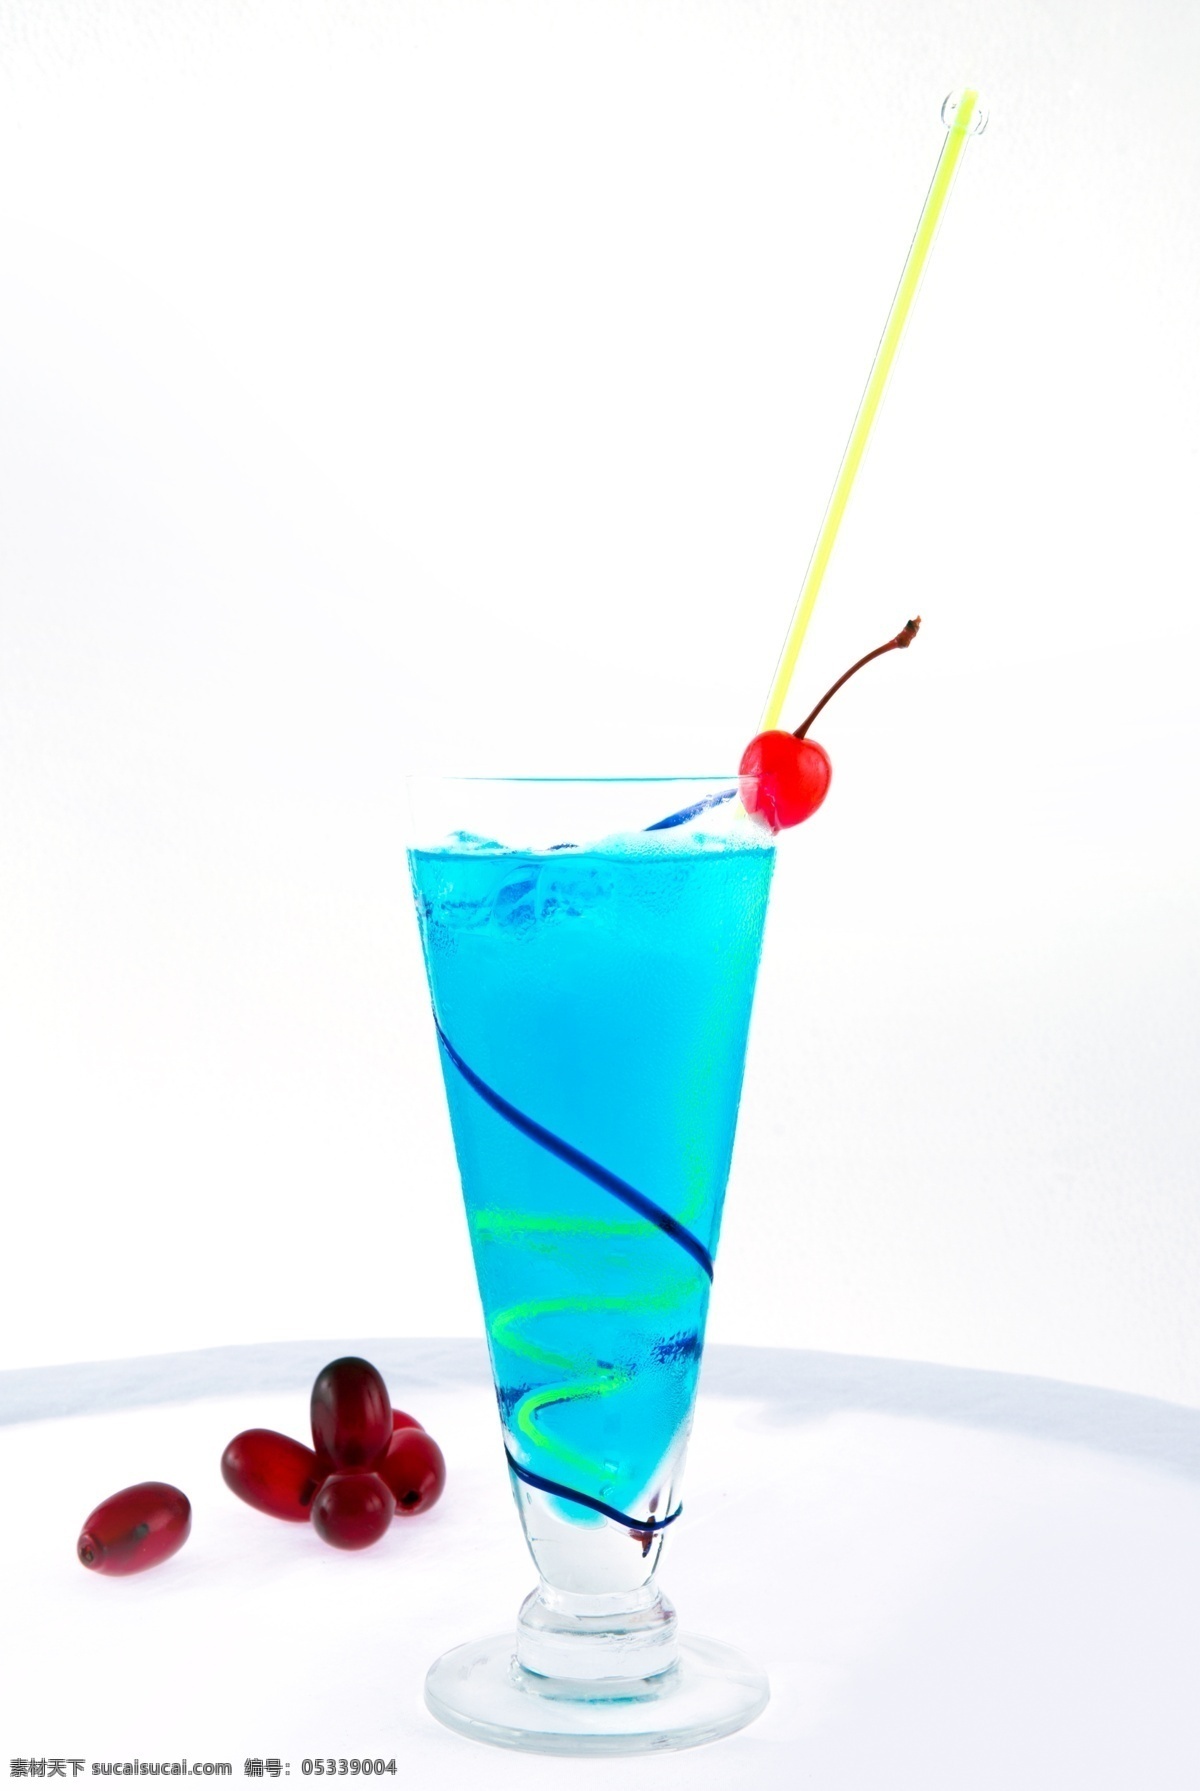 蓝色 珊瑚 夏威夷 鸡尾酒 蓝色夏威夷 饮品 饮料 酒水 餐饮美食 饮料酒水